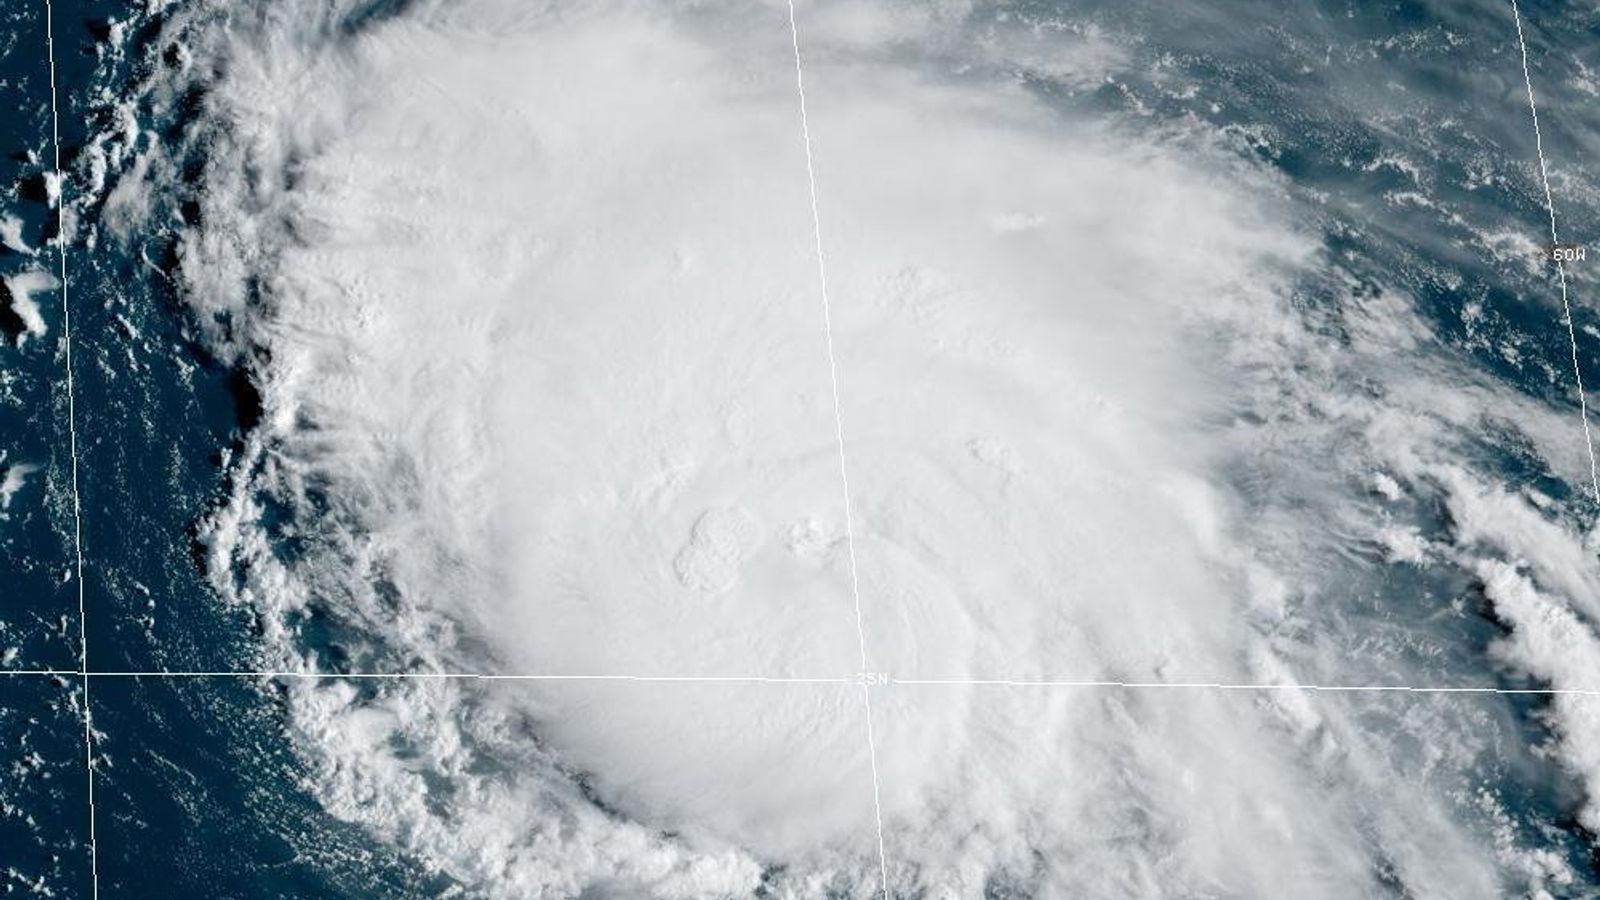 Hurrikan Earl bedroht Bermuda und könnte zu einer „lebensbedrohlichen“ Inflation führen, so die Nachrichten von der US-Ostküste